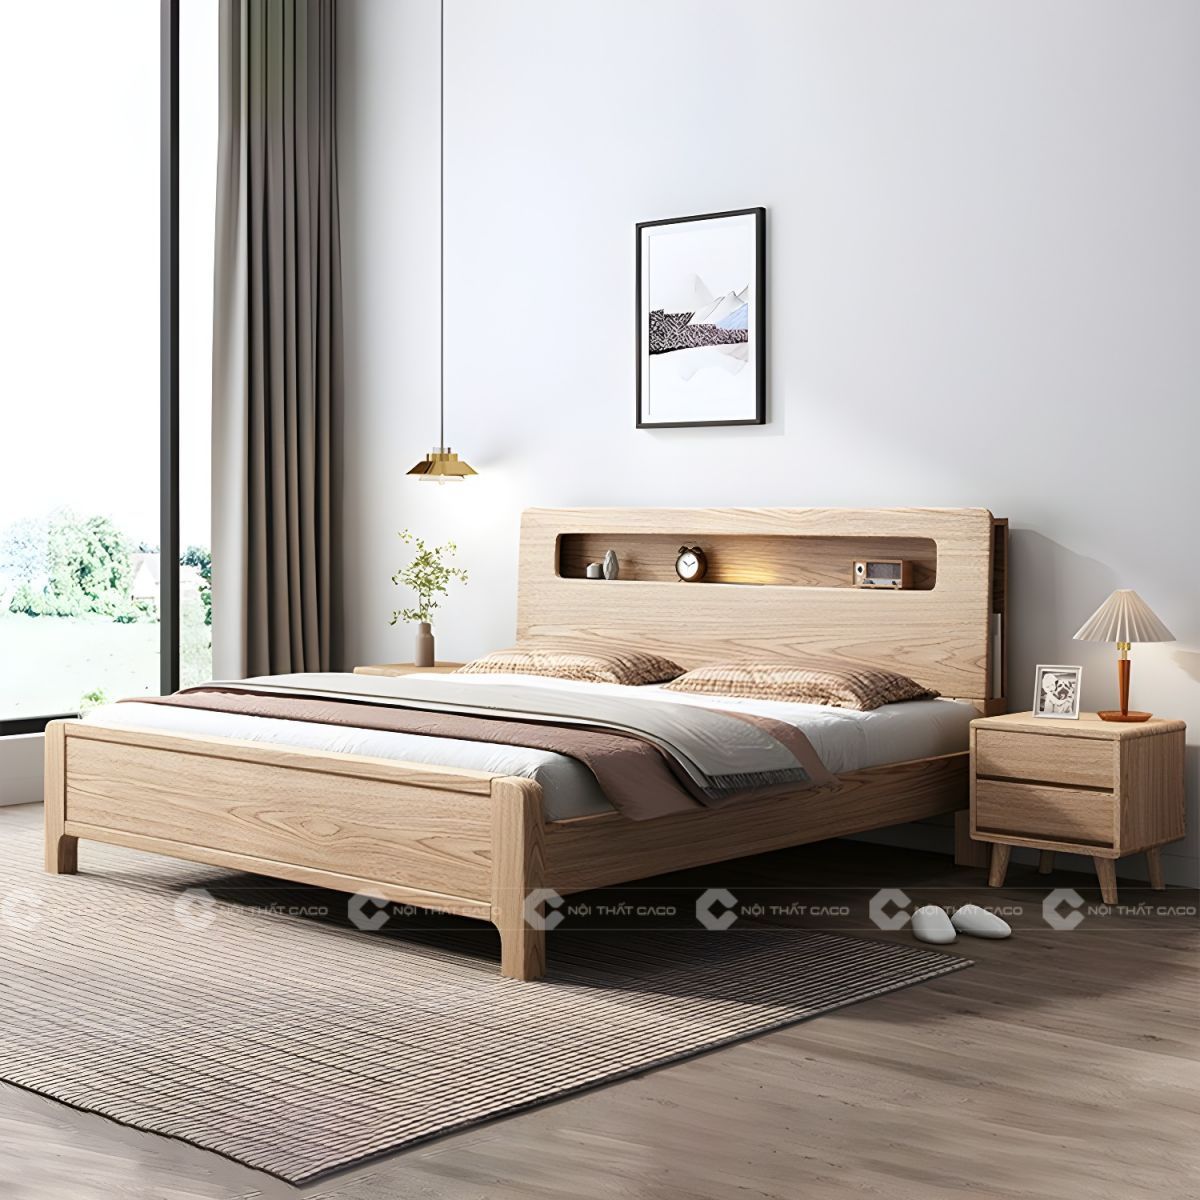 Giường ngủ gỗ tự nhiên thiết kế tỉ mỉ tinh tế